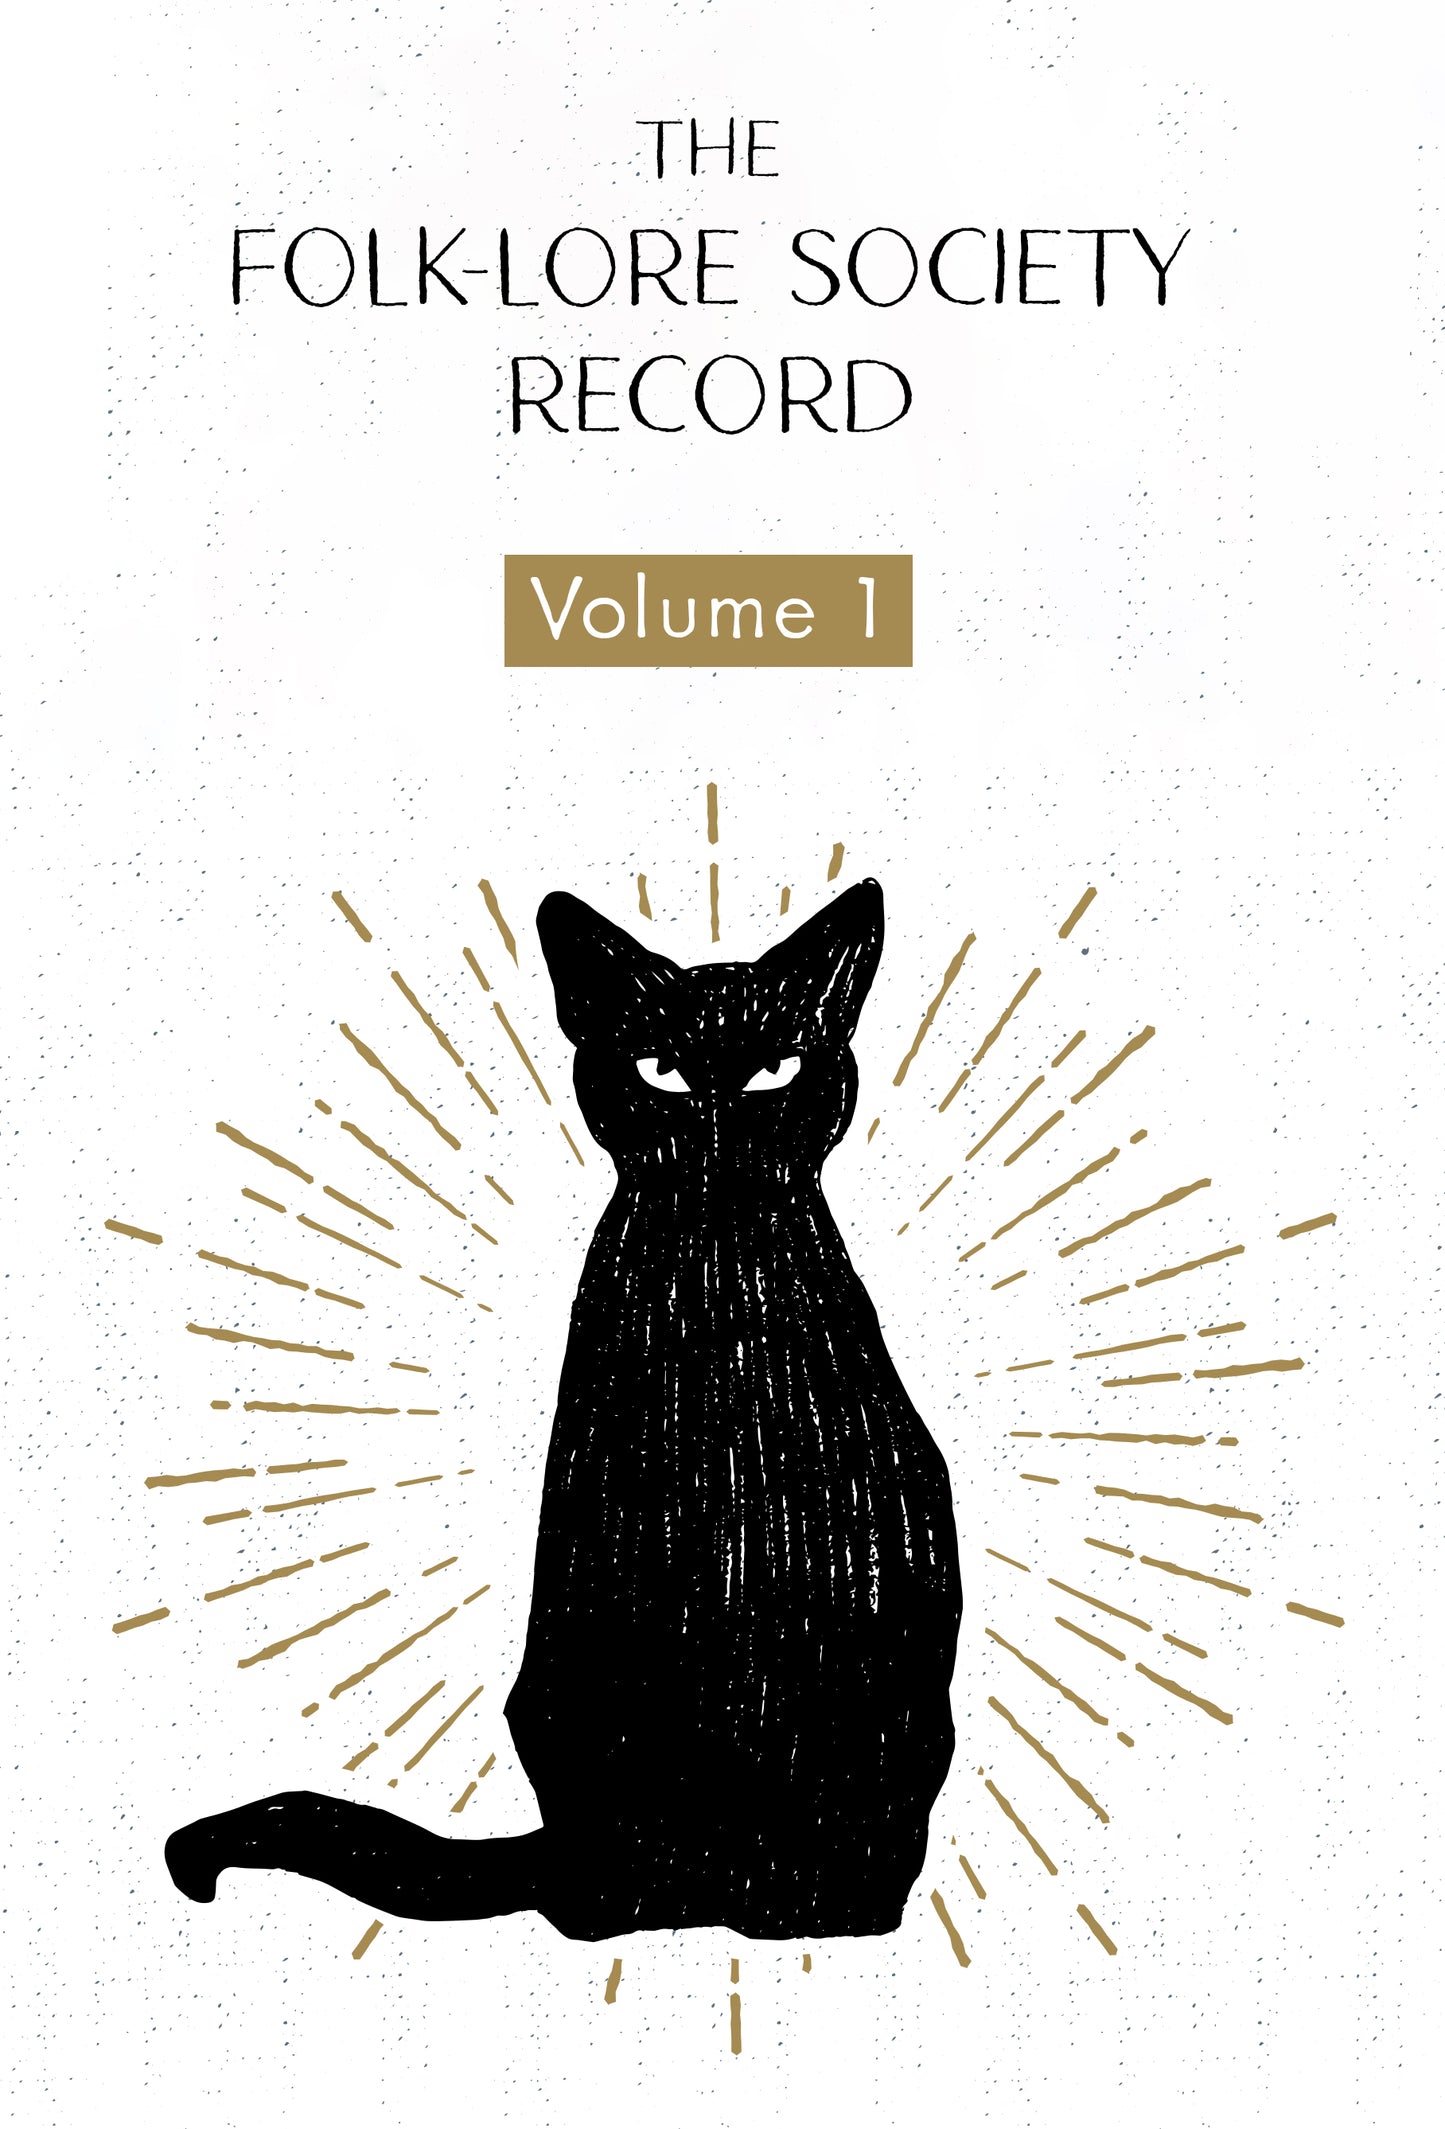 The Folk-Lore Society Record Volume I